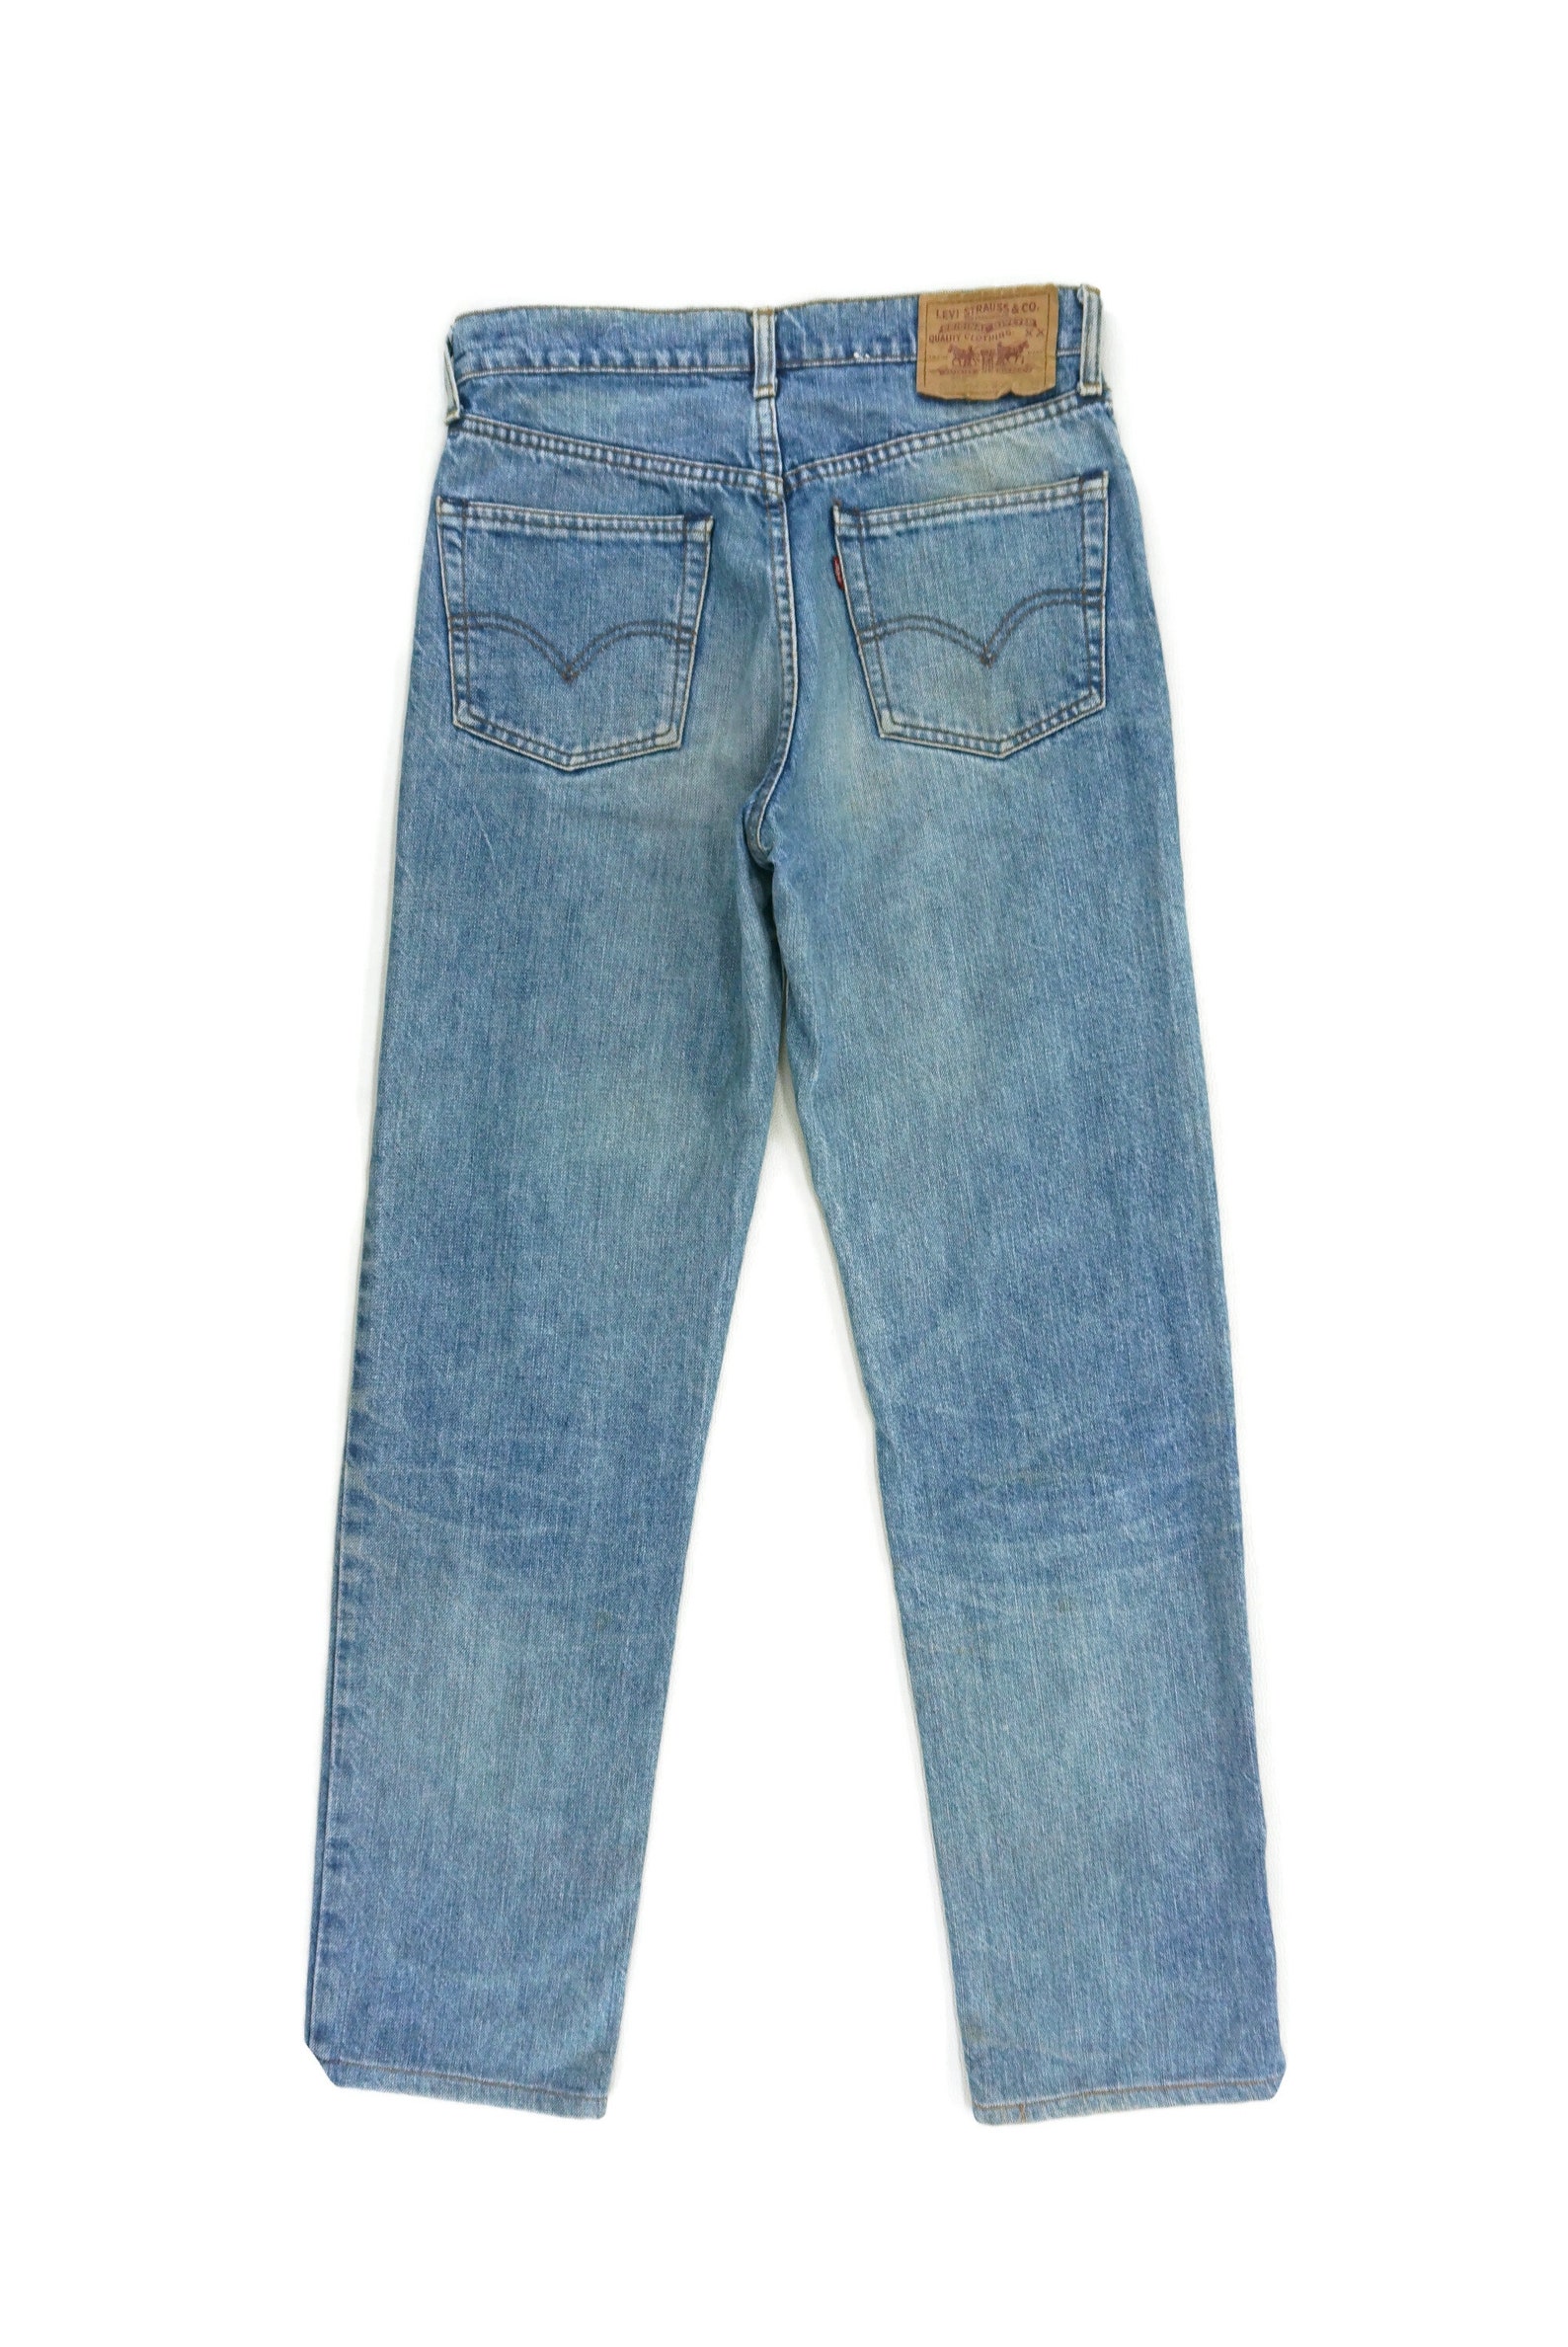 Levi's Jeans Levis 503 W30xl30.5 Denim Jeans Distressed - Etsy UK